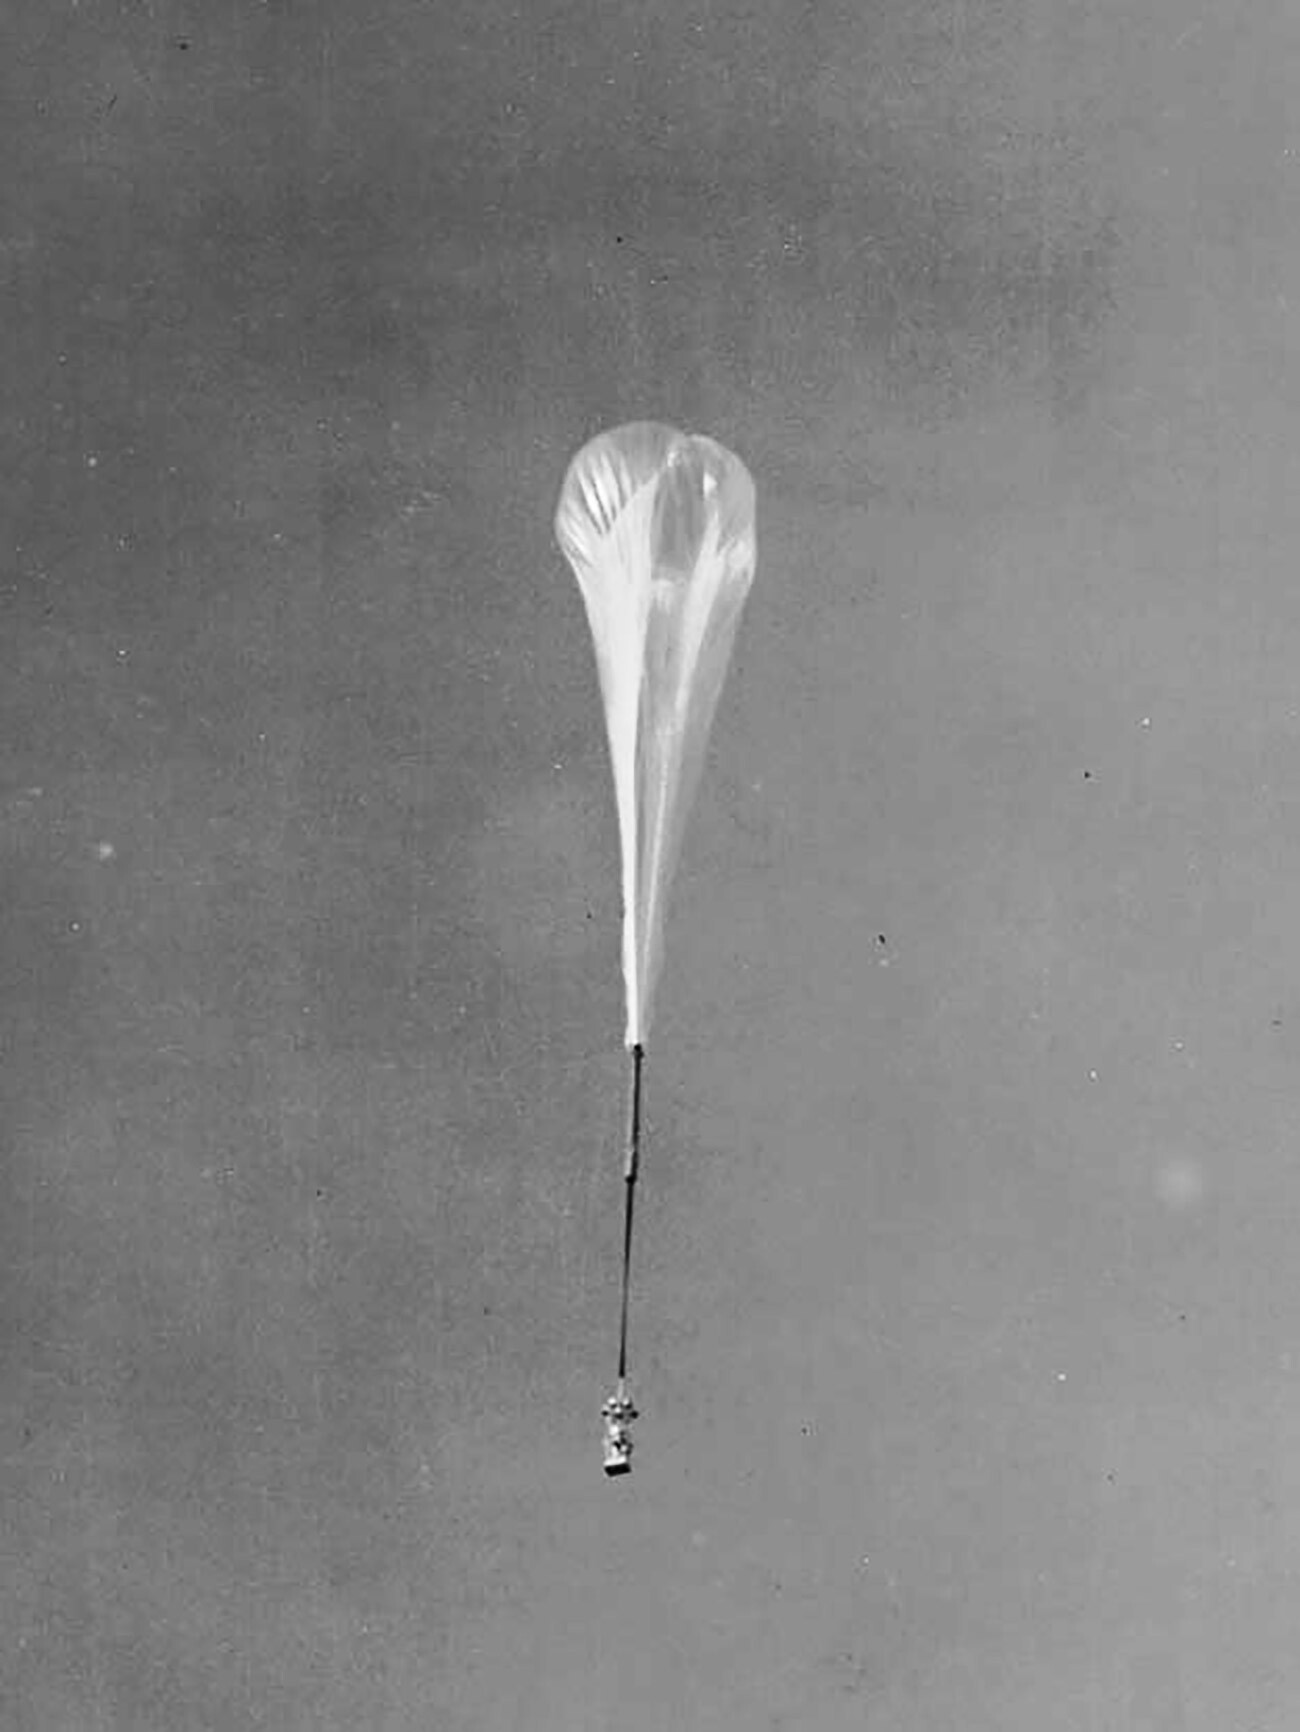 Skyhook balloon, algo como balão do gancho celeste